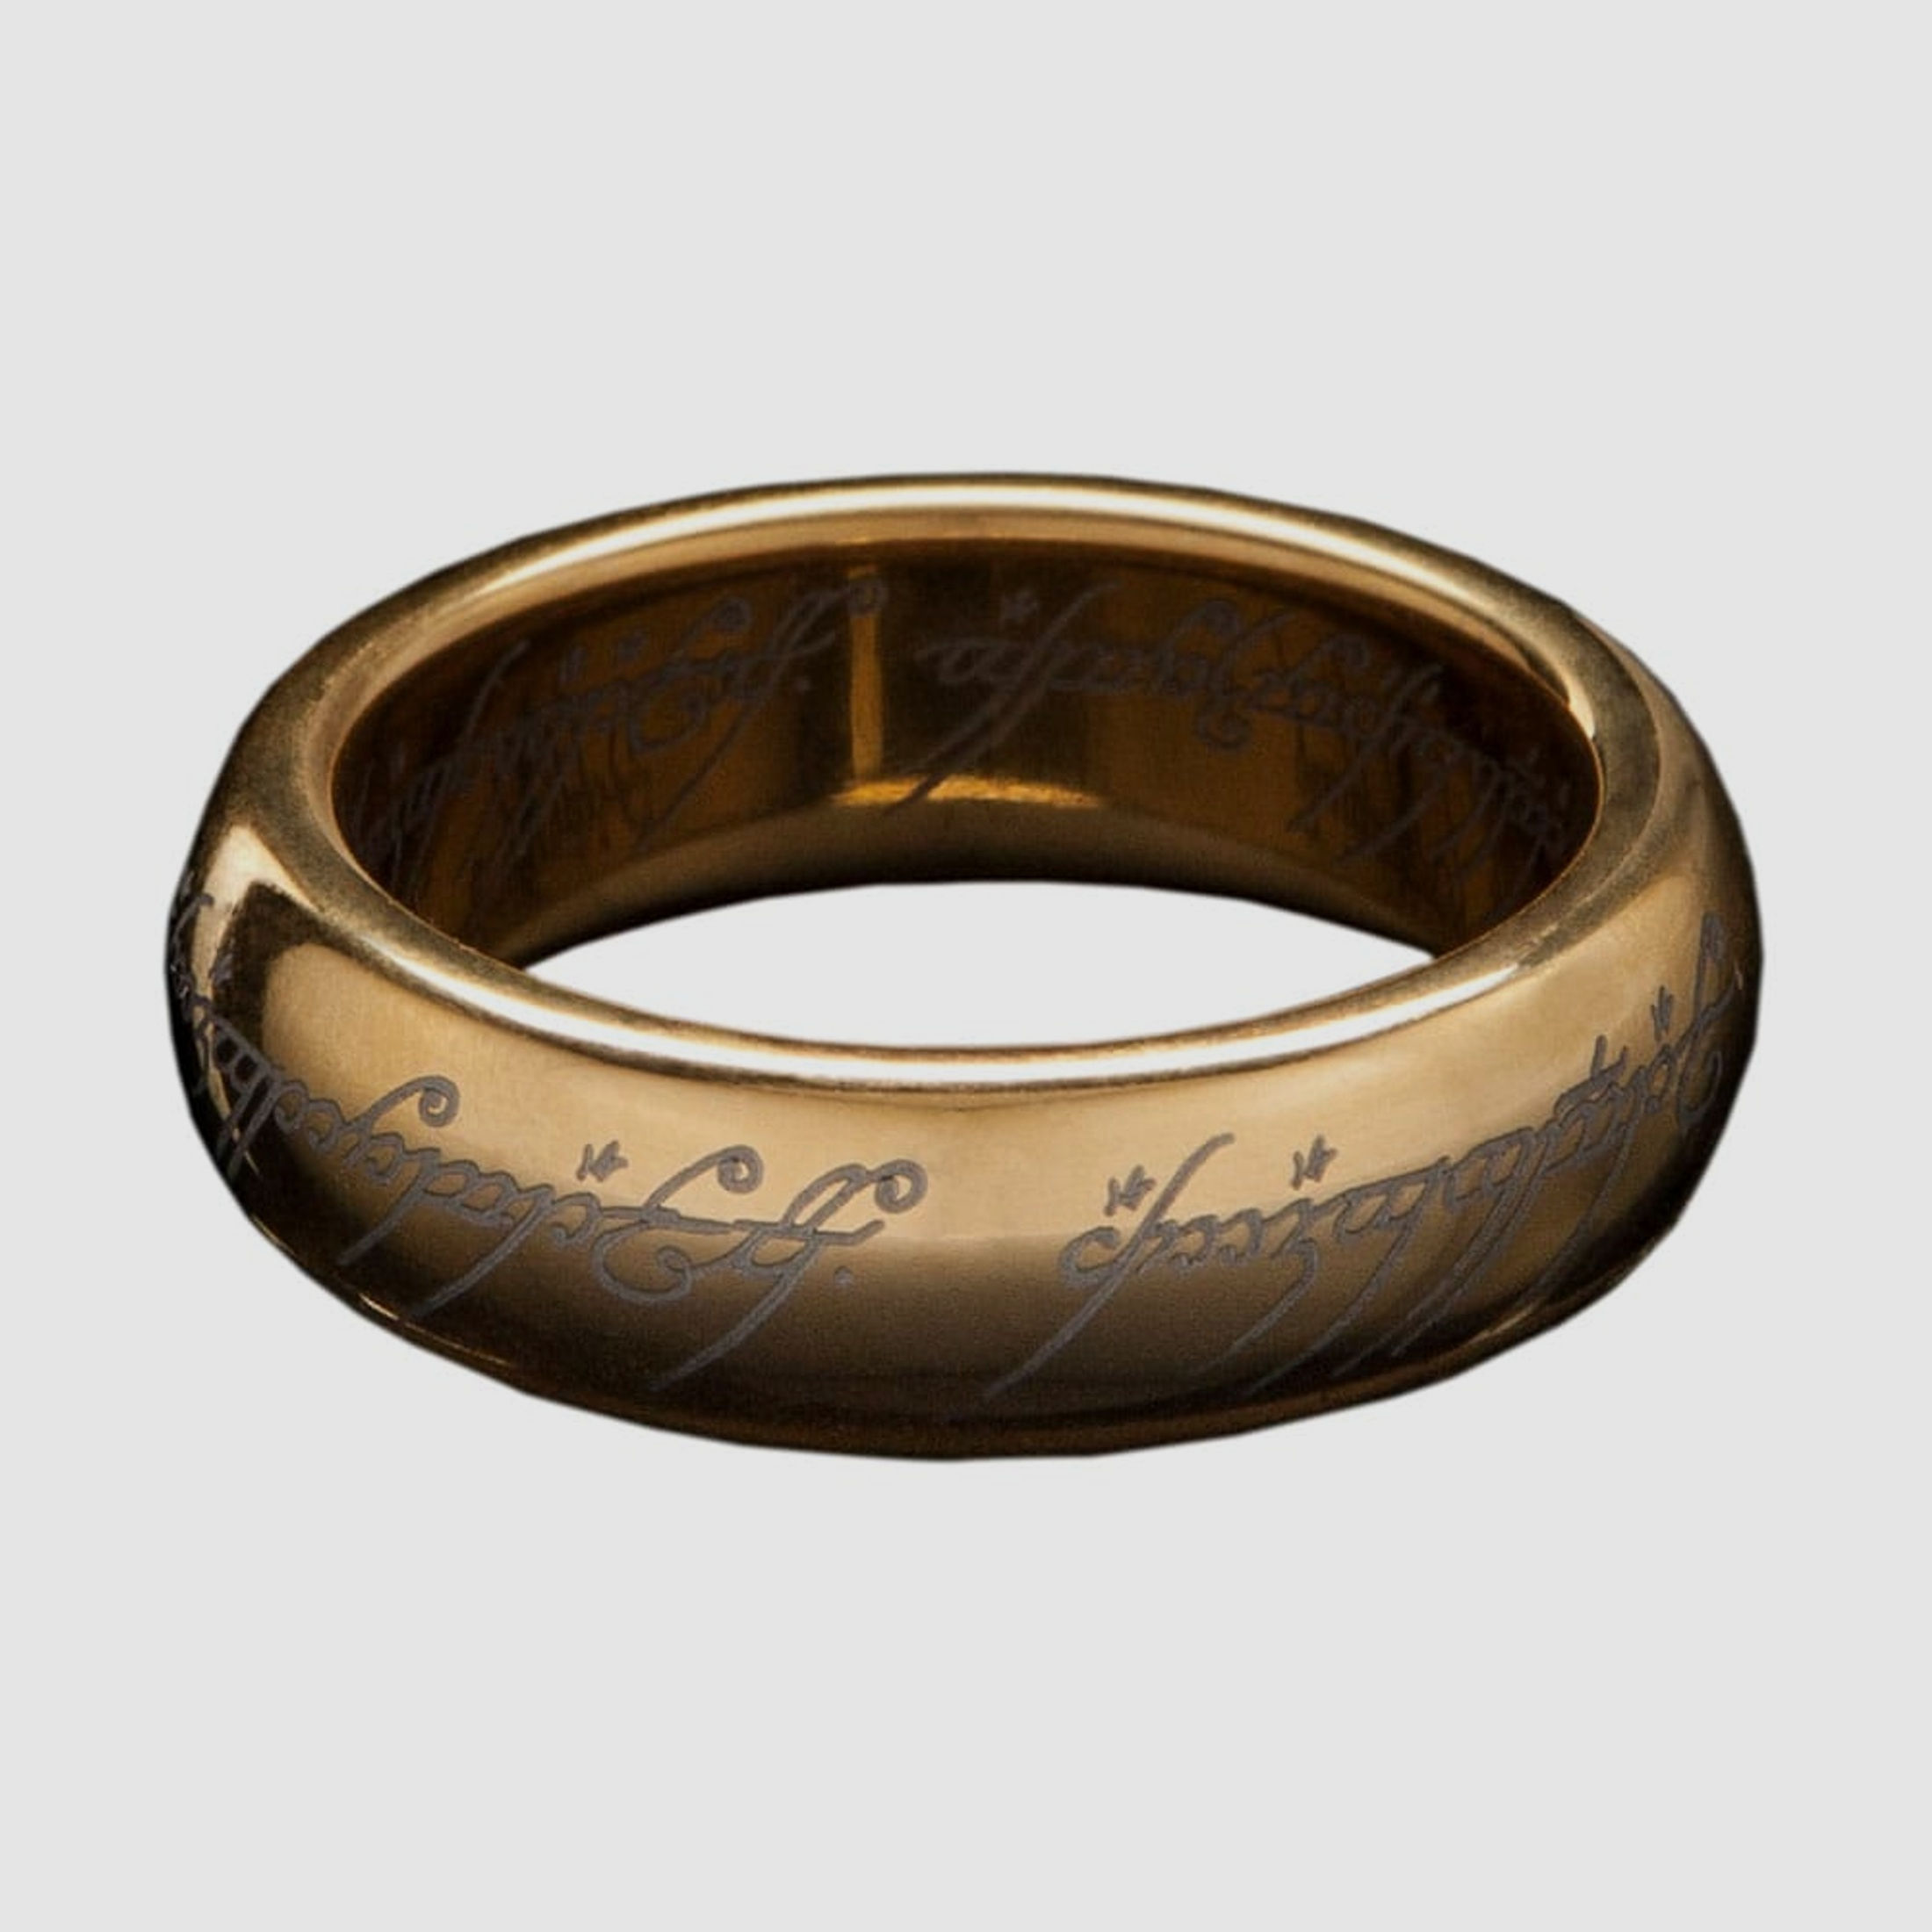 Herr der Ringe Wolfram-Ring Der Eine Ring (vergoldet) Größe 11 | 42777